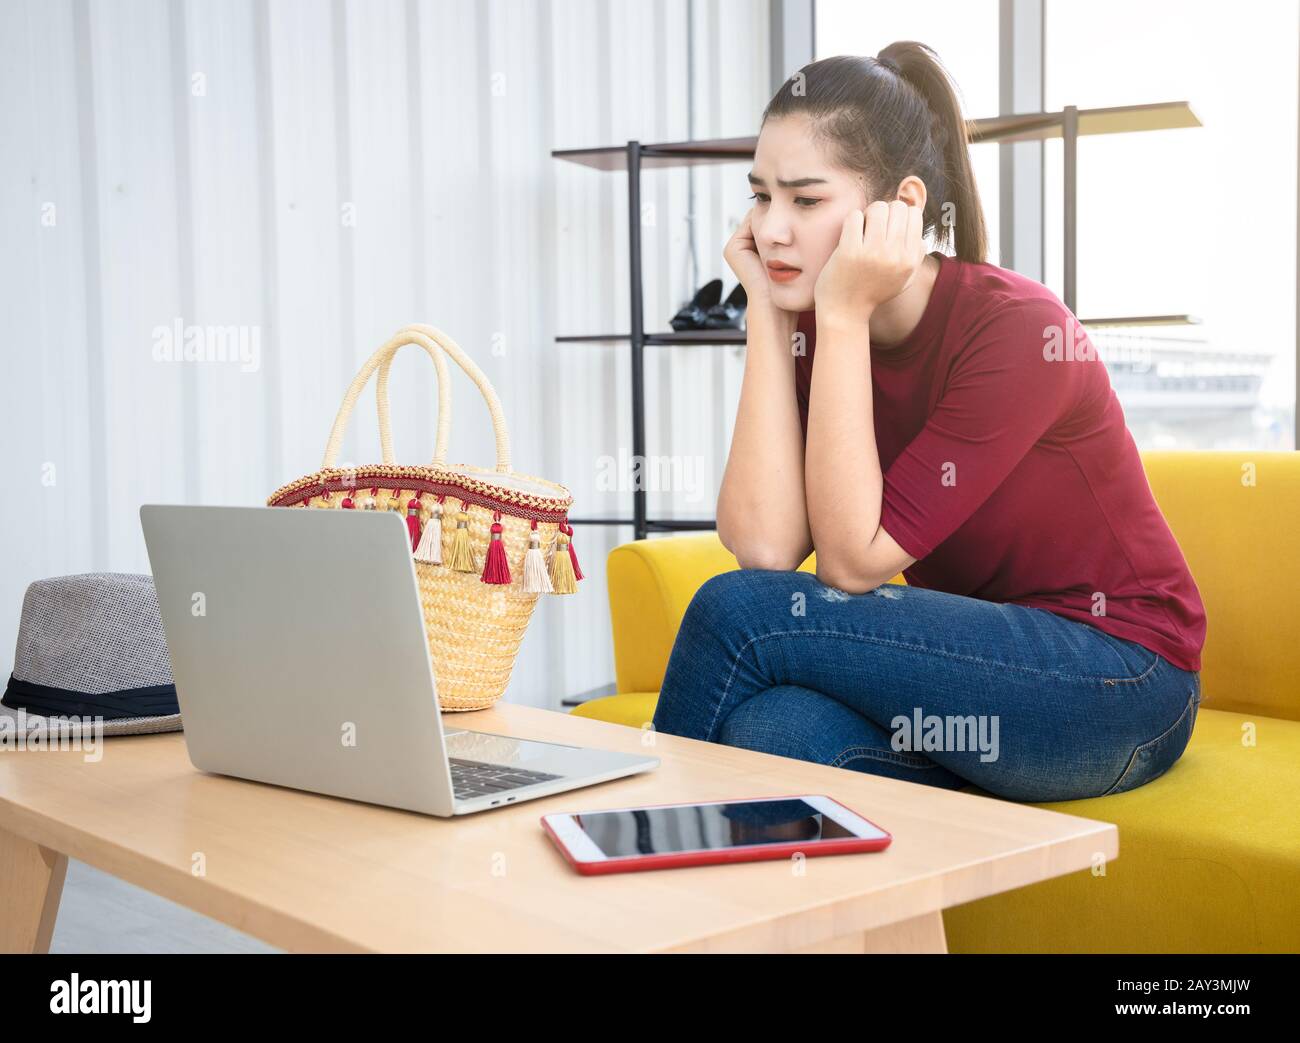 Donna asiatica ansiosa sedersi sul divano giallo e guardare lo schermo del suo computer portatile. Chi influenza Internet si preoccupa del suo problema dei social media. Foto Stock